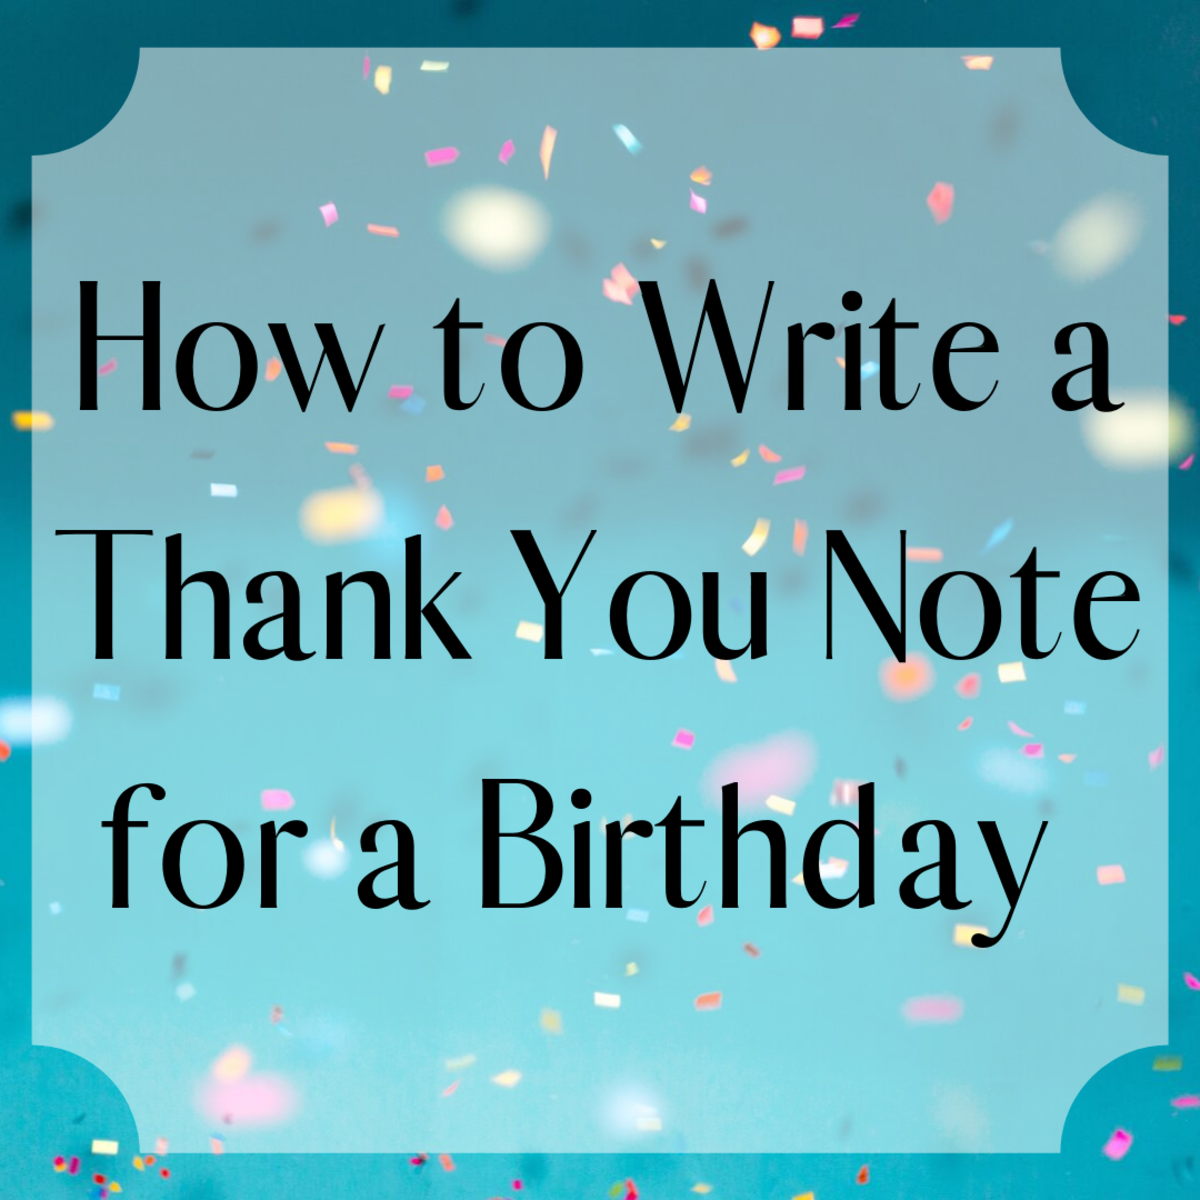 Response To Happy Birthday Wishes - Birthday Ideas